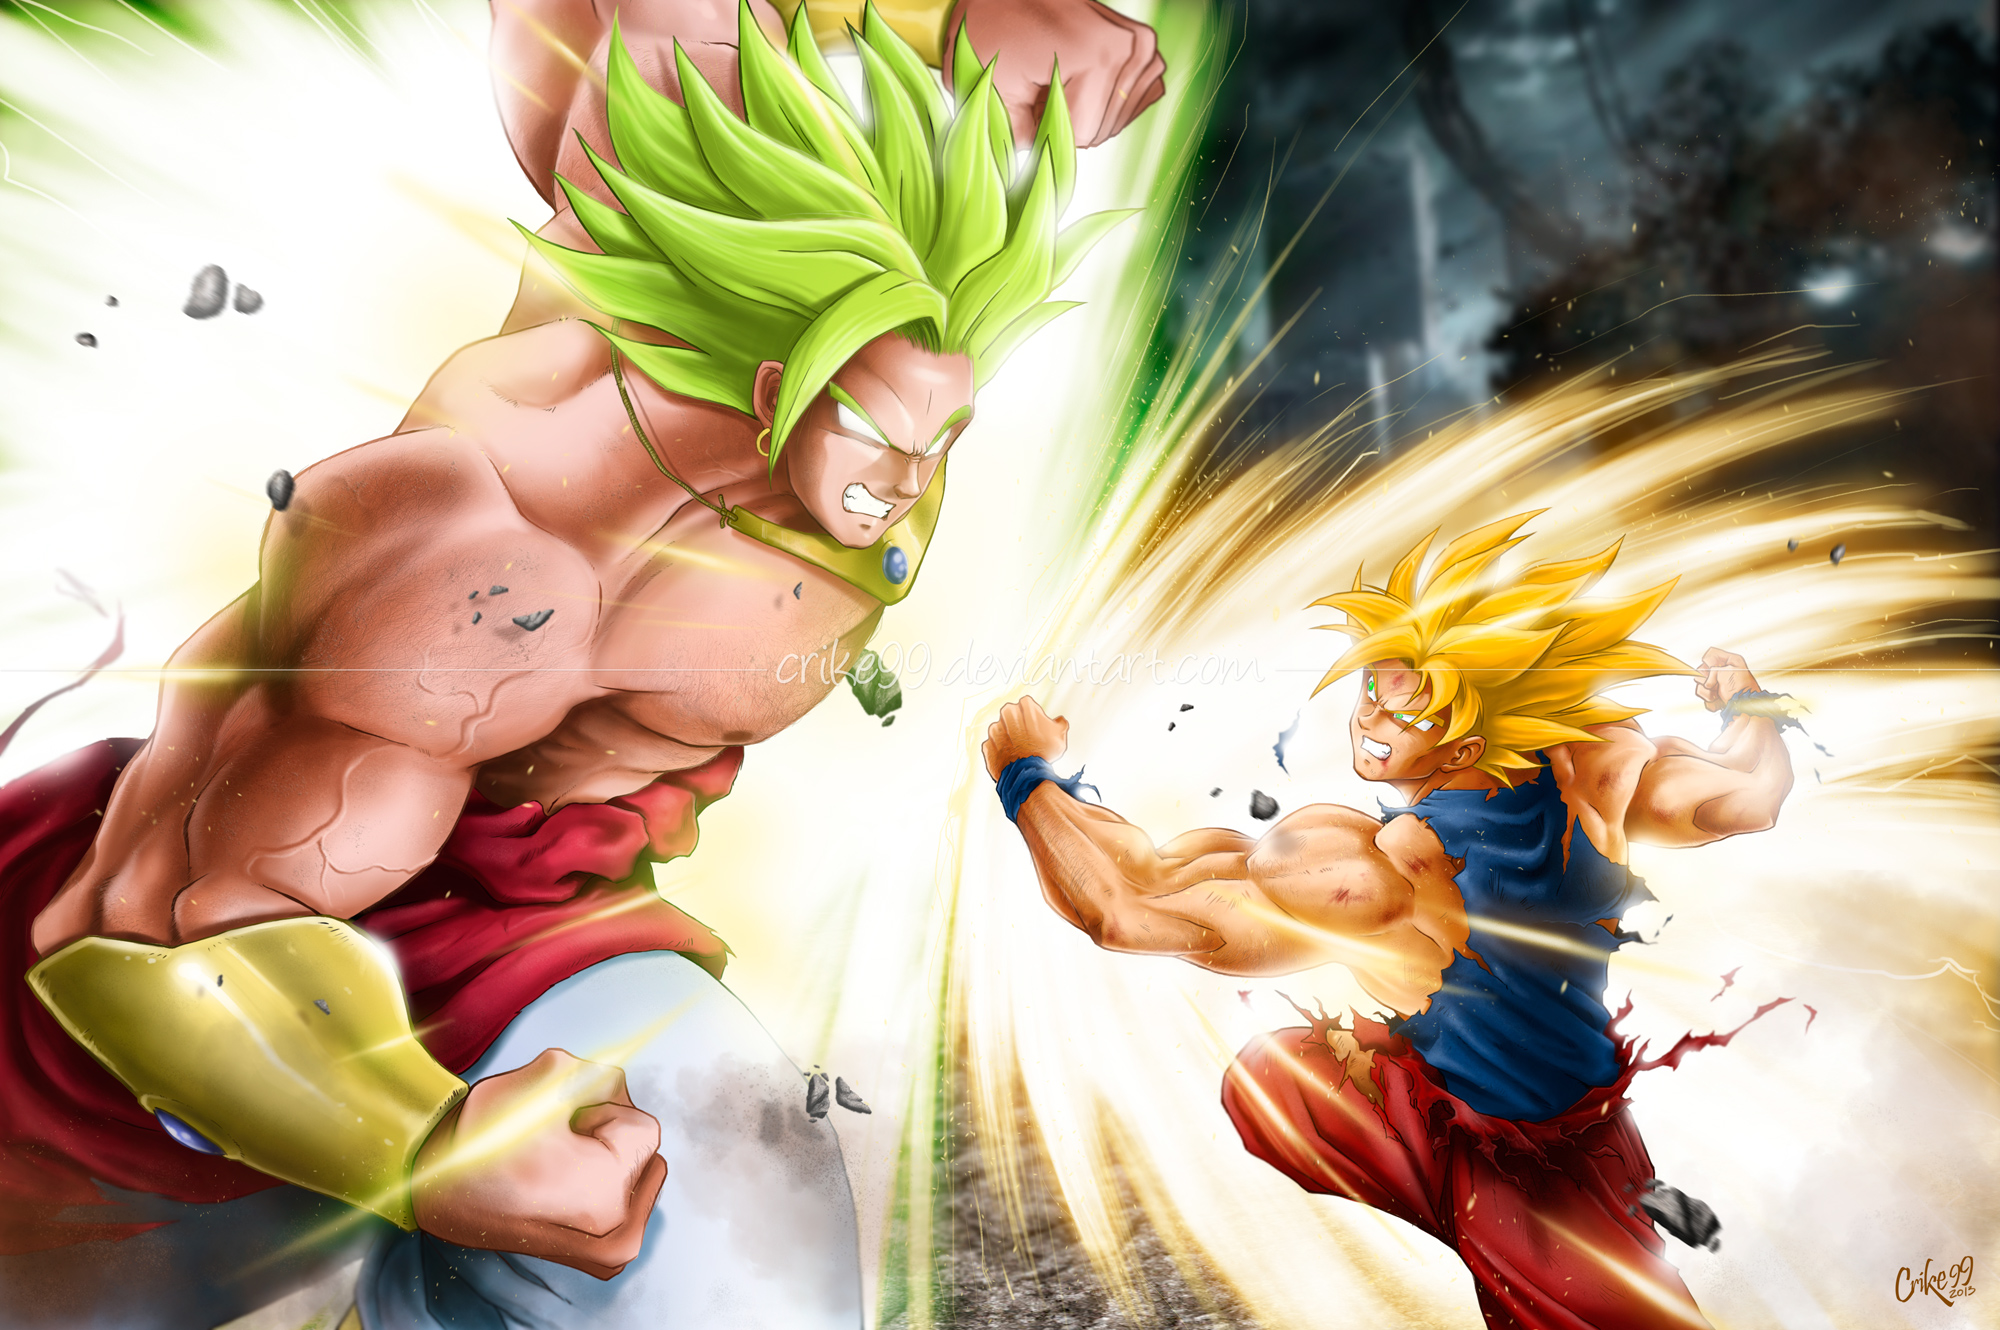 48+] Goku vs Broly Wallpaper - WallpaperSafari